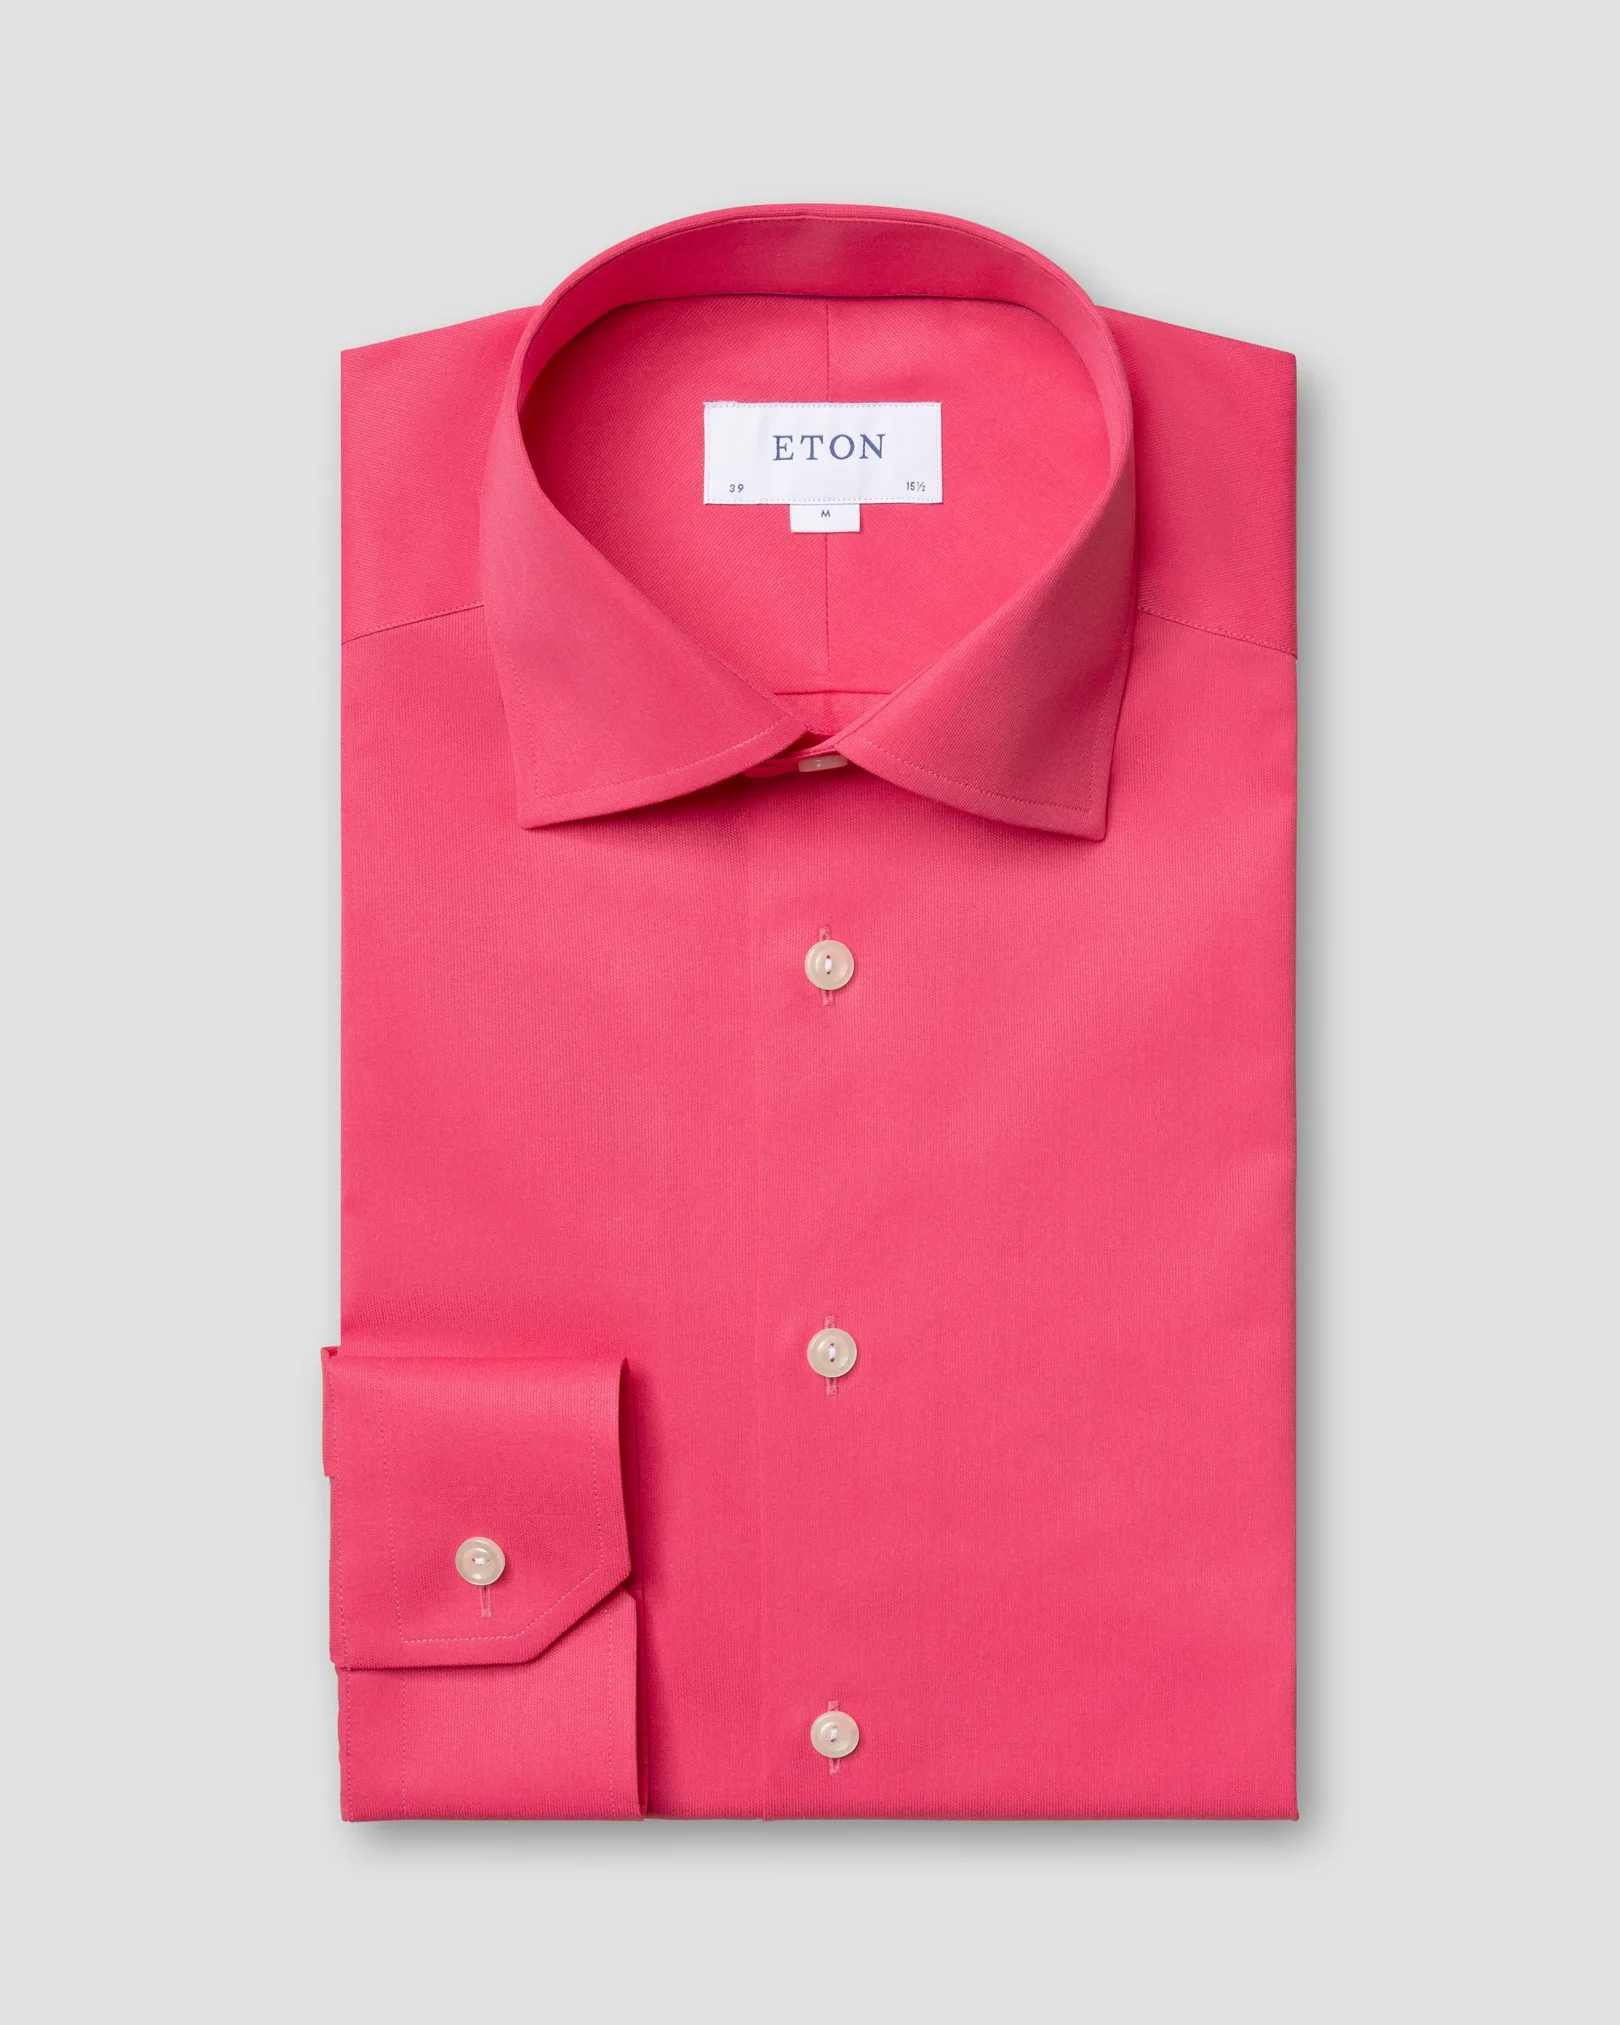 Eton - pink satin shirt